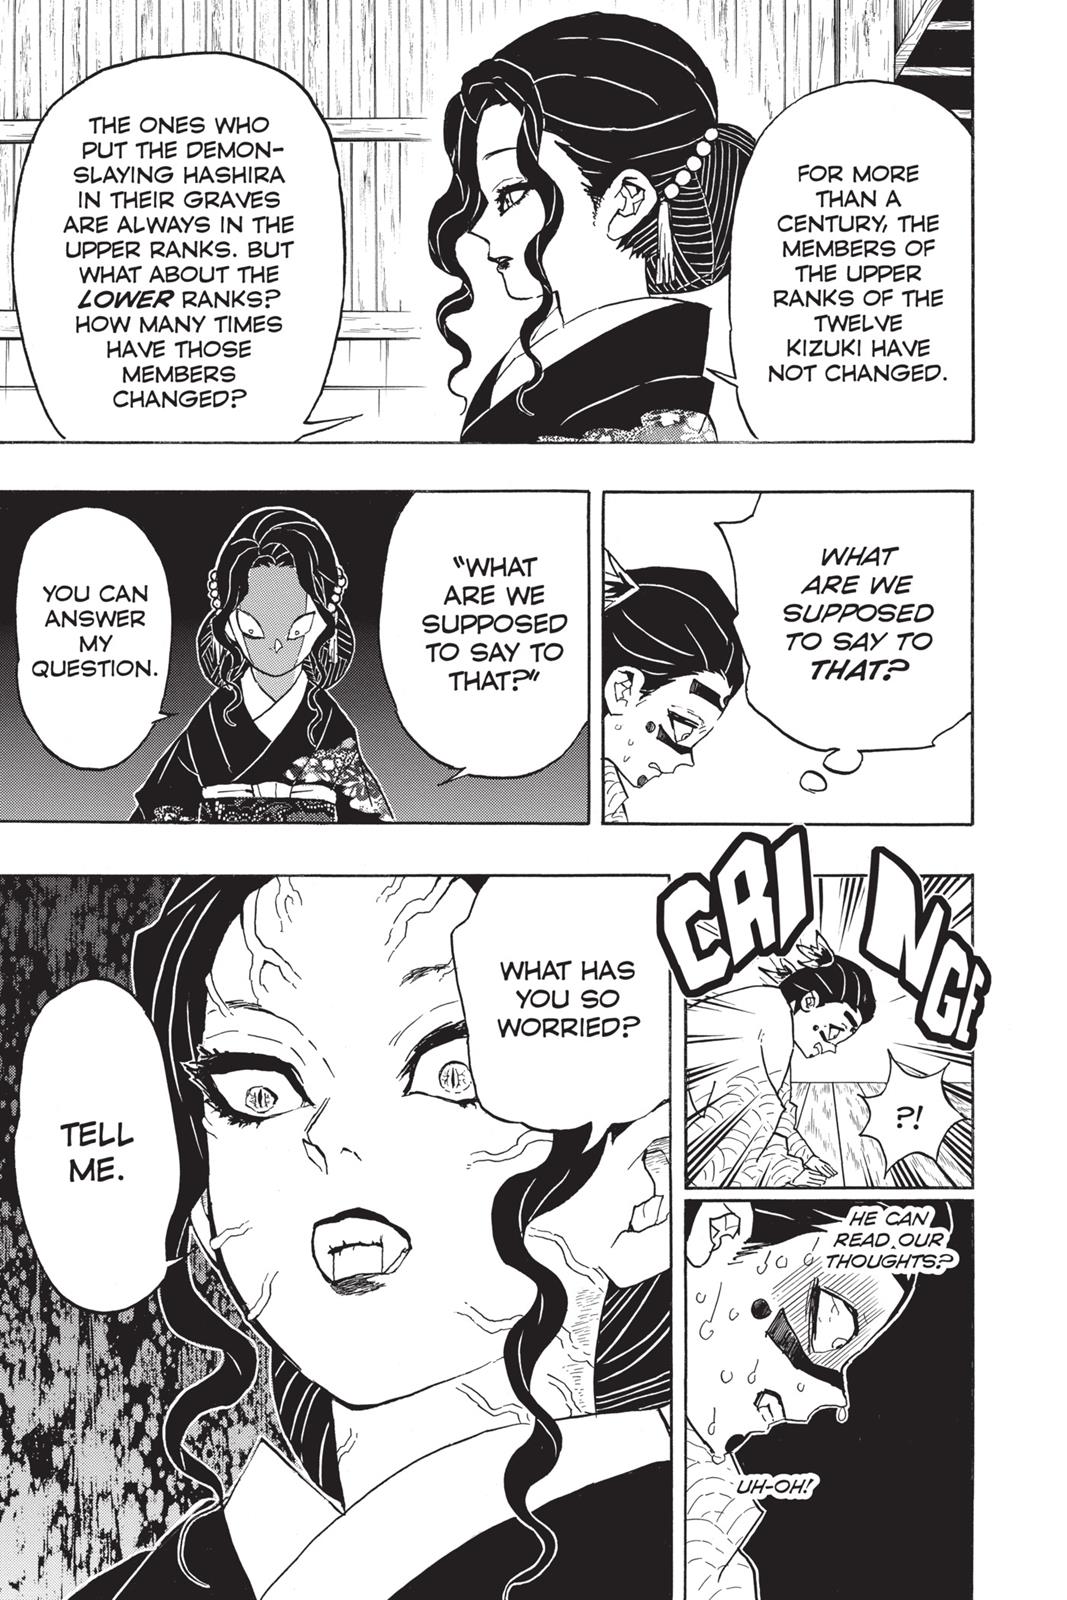 Demon Slayer Manga Manga Chapter - 51 - image 13